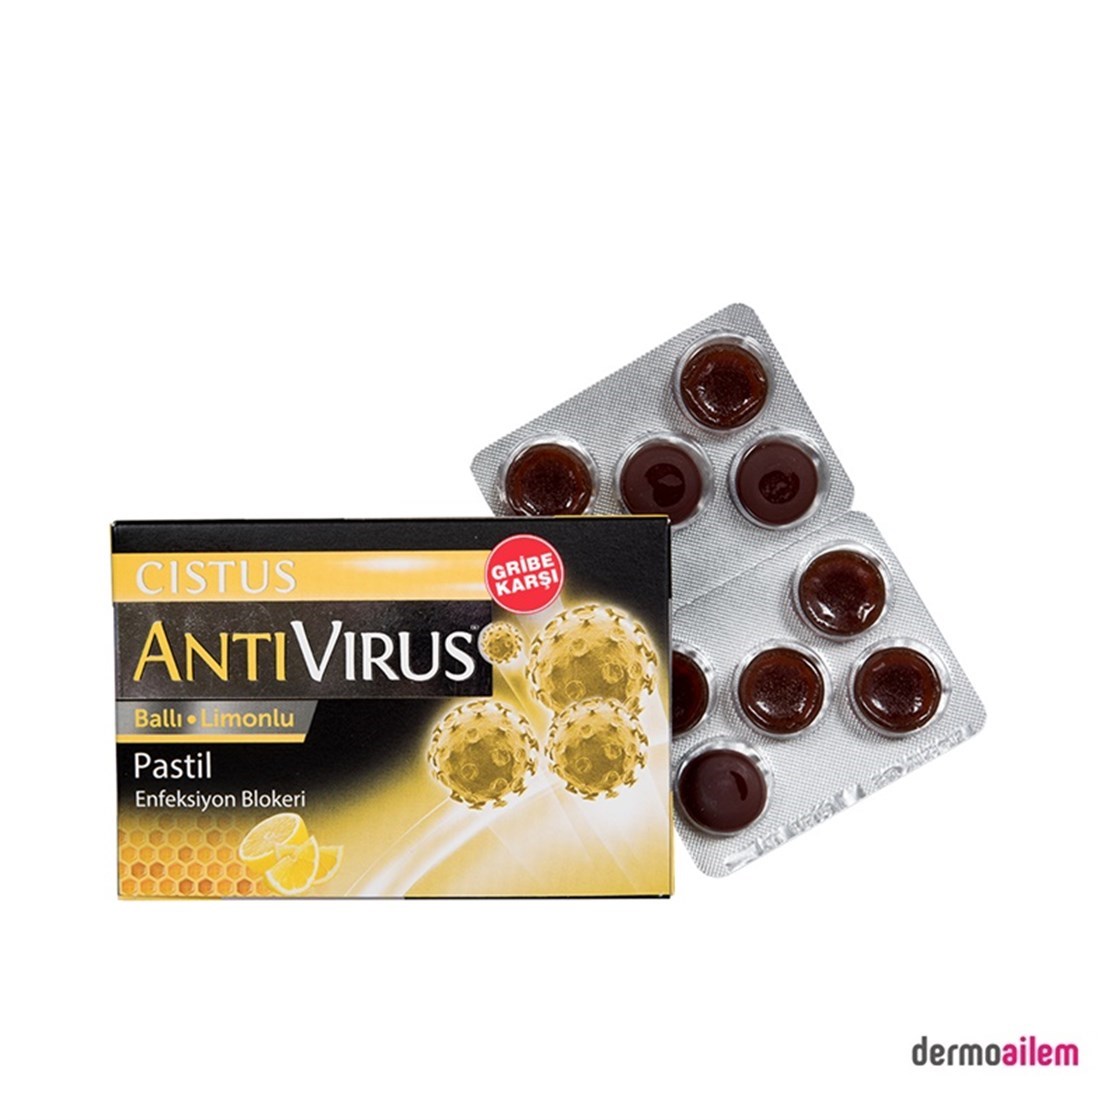 Cistus Antivirus Ballı Limonlu 10 Pastil Fiyatları İndirimli |  Dermoailem.com